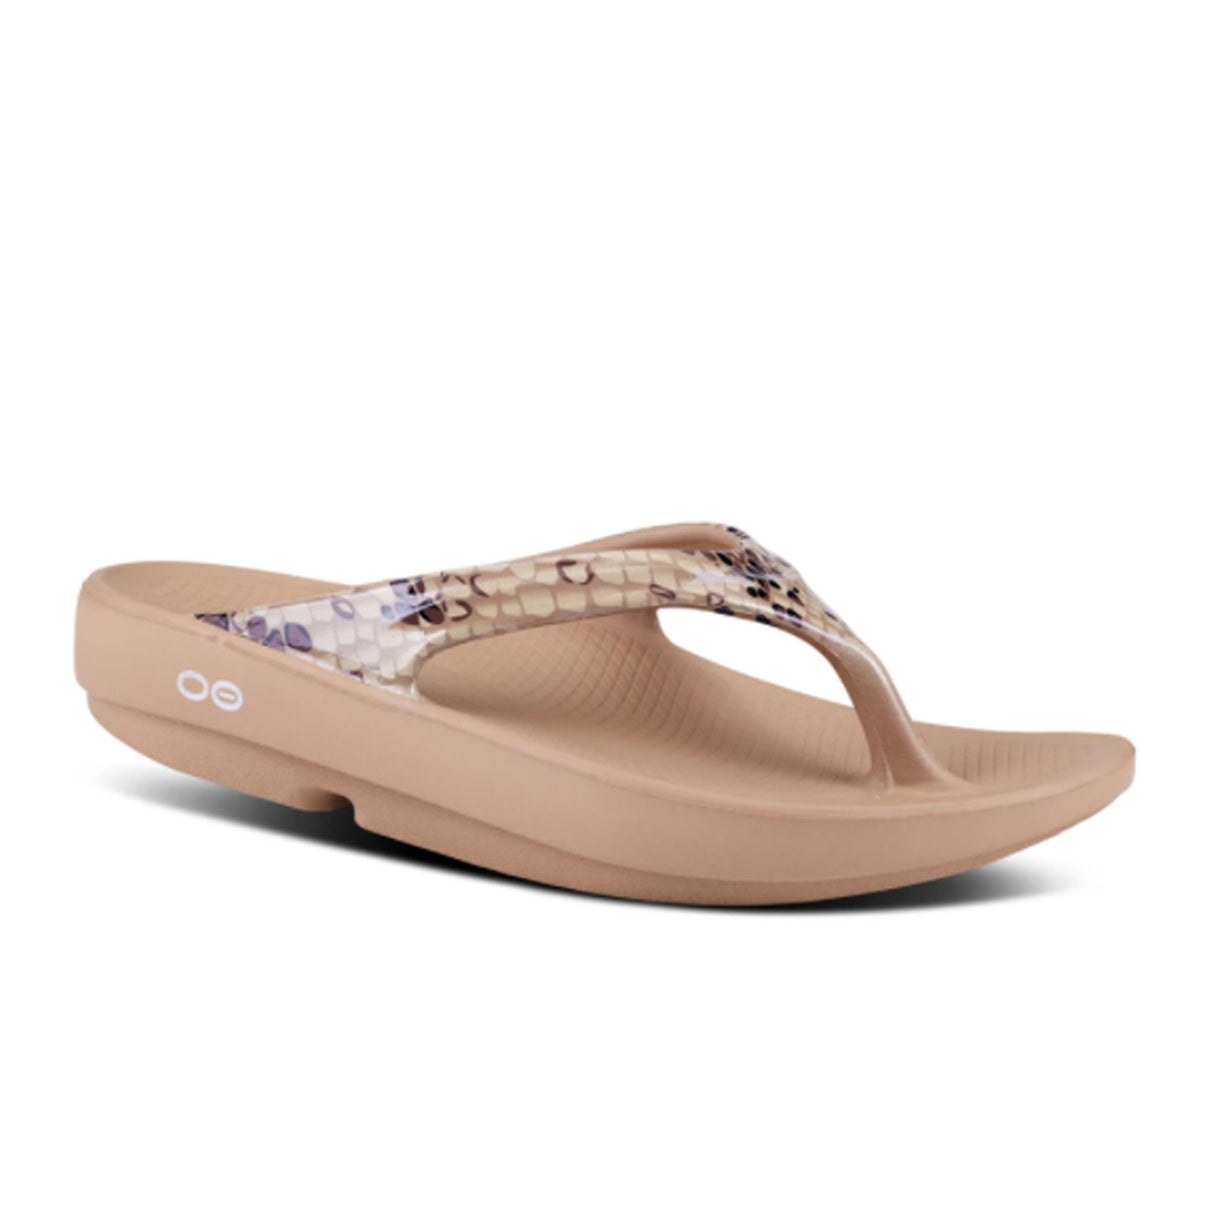 Oofos OOlala Limited Sandal (Women) - Desert Snake Sandals - Slide - The Heel Shoe Fitters